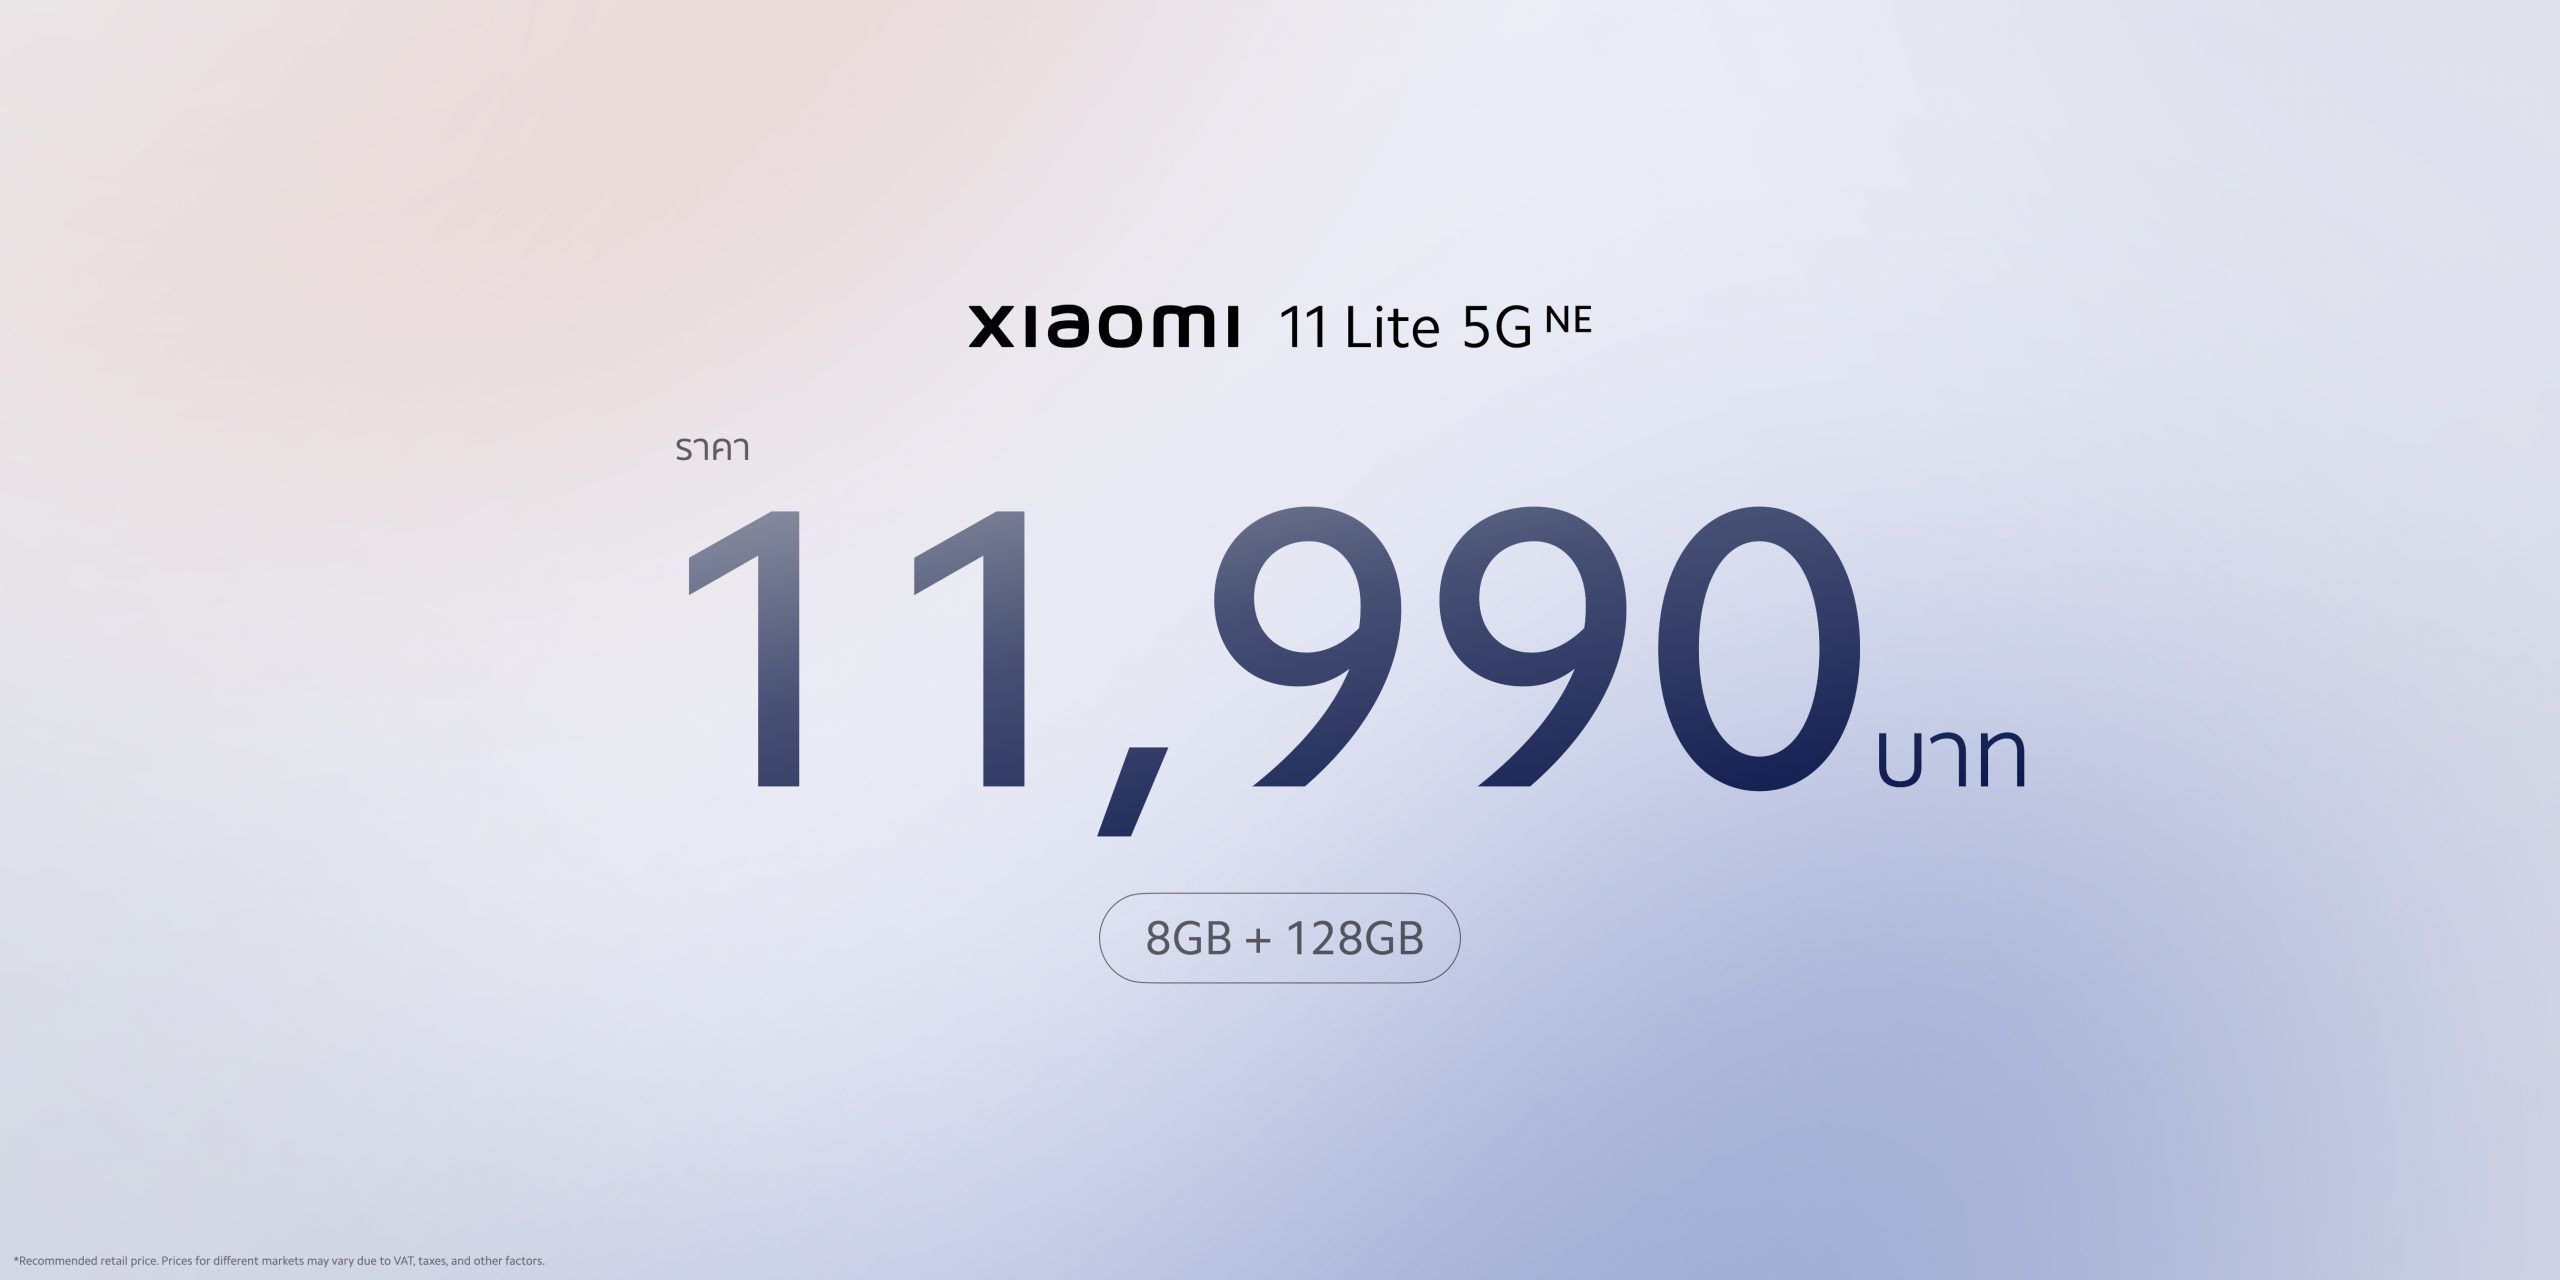 สเปค Xiaomi 11 Lite 5G NE หน้าจอ 90Hz Dolby Vision, ลำโพงคู่, กล้อง 64MP ราคาเบา ๆ เริ่ม 10,990 บาท